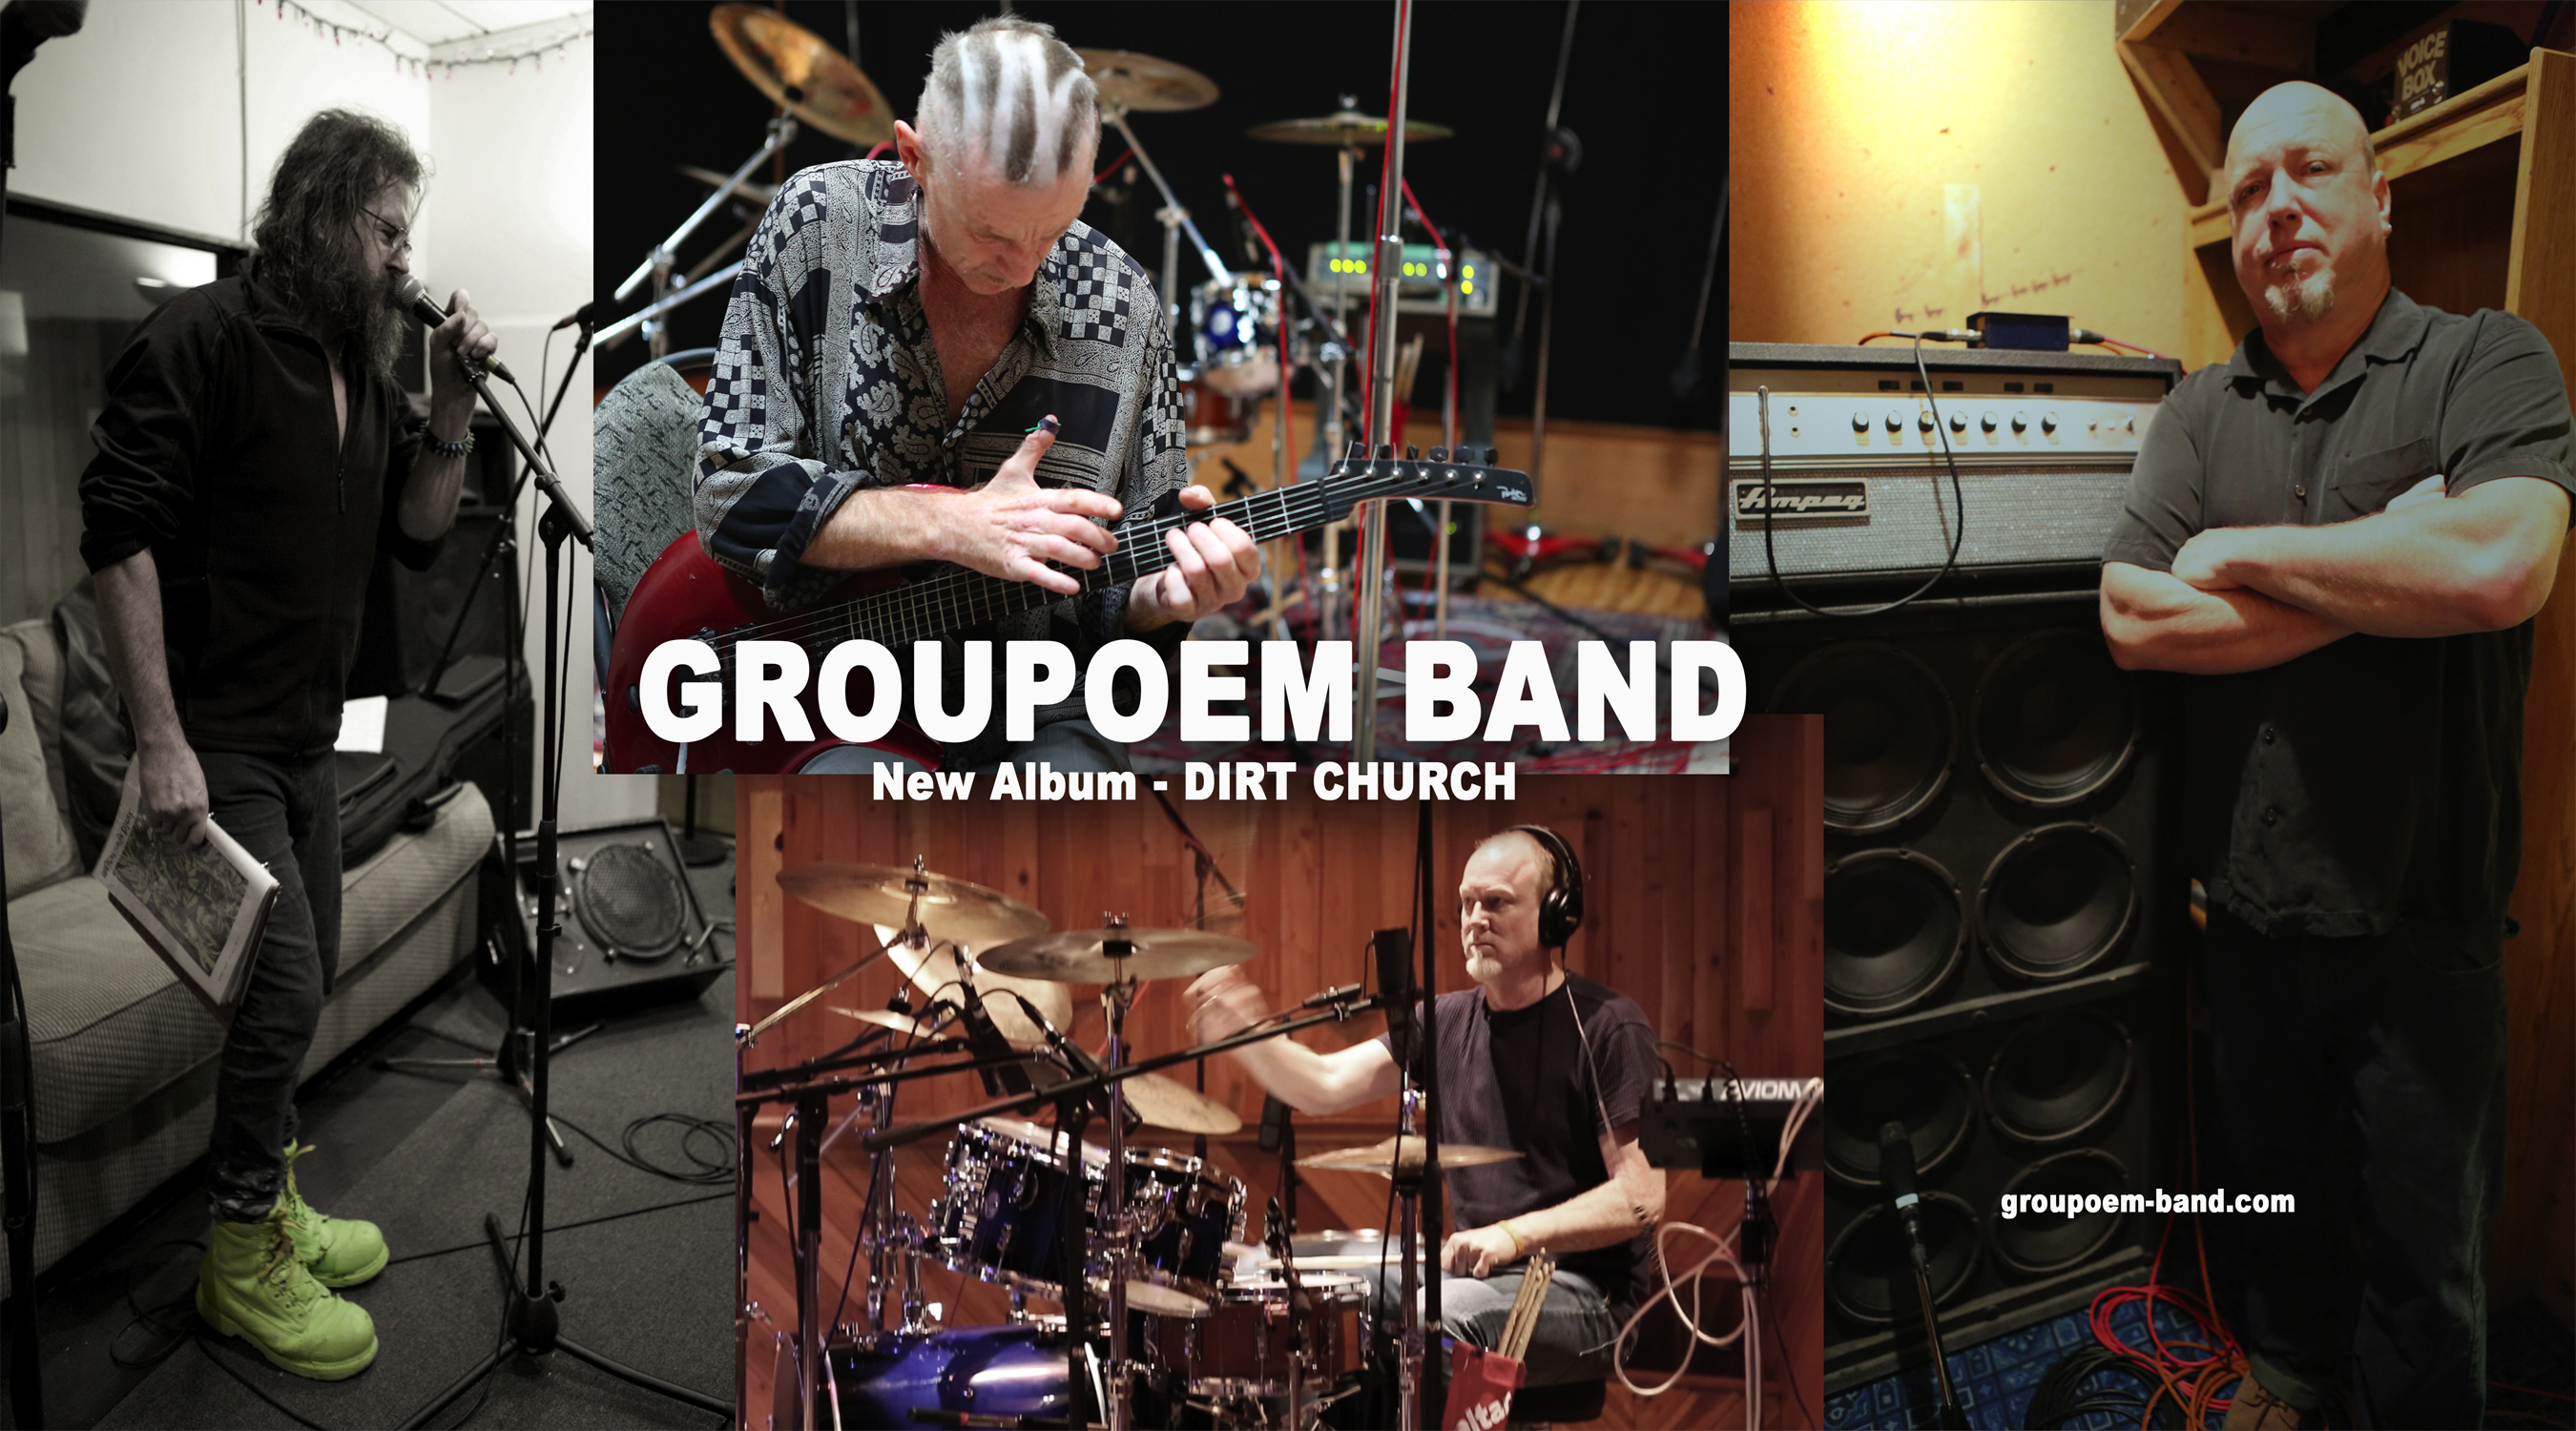 Groupoem band members, Terry Robinson, Marph, Chris Lee & Darren Katamay.